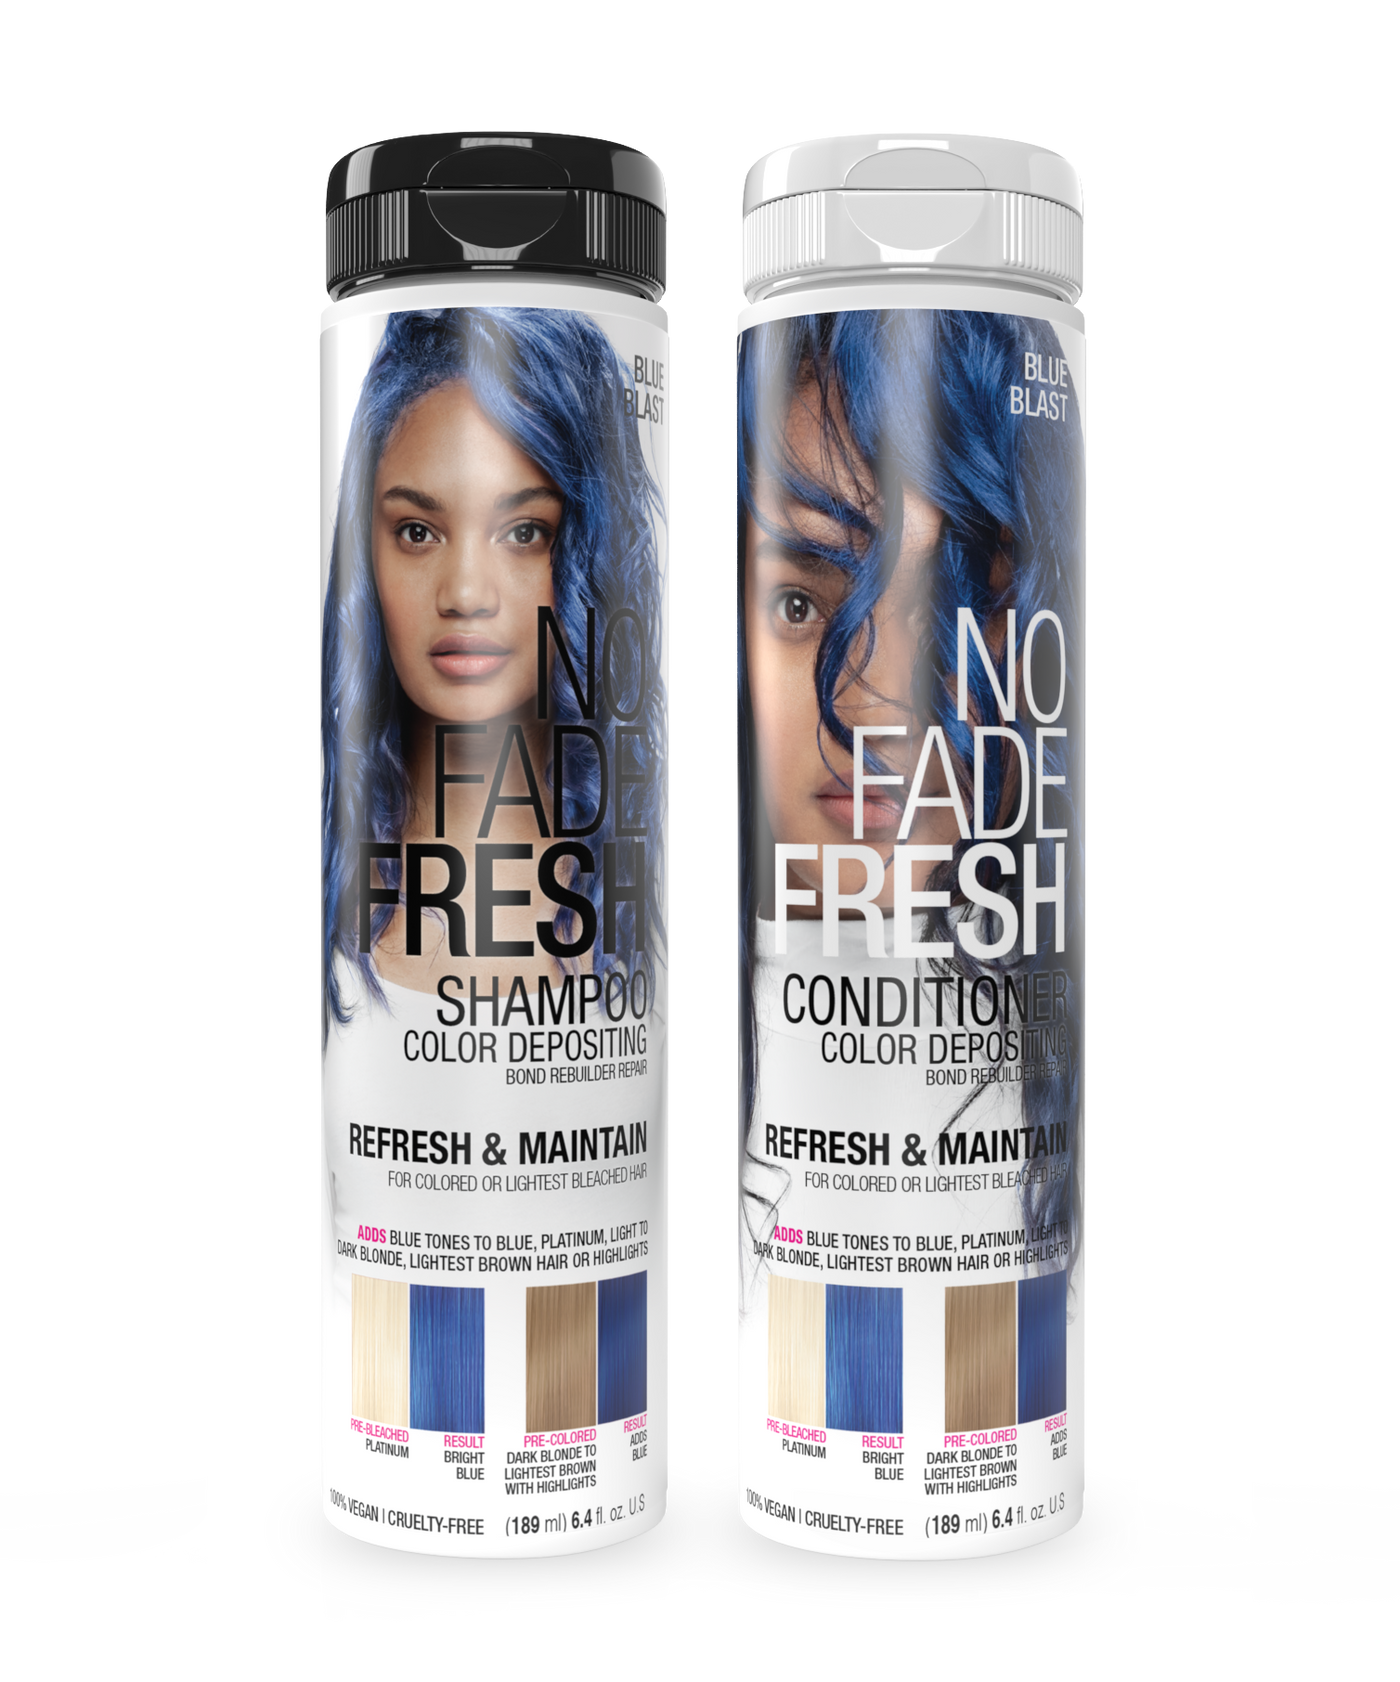 No Fade Fresh Semi Permanent Colour Depositing Shampoo & Conditioner Duo Blue Blast 189ml